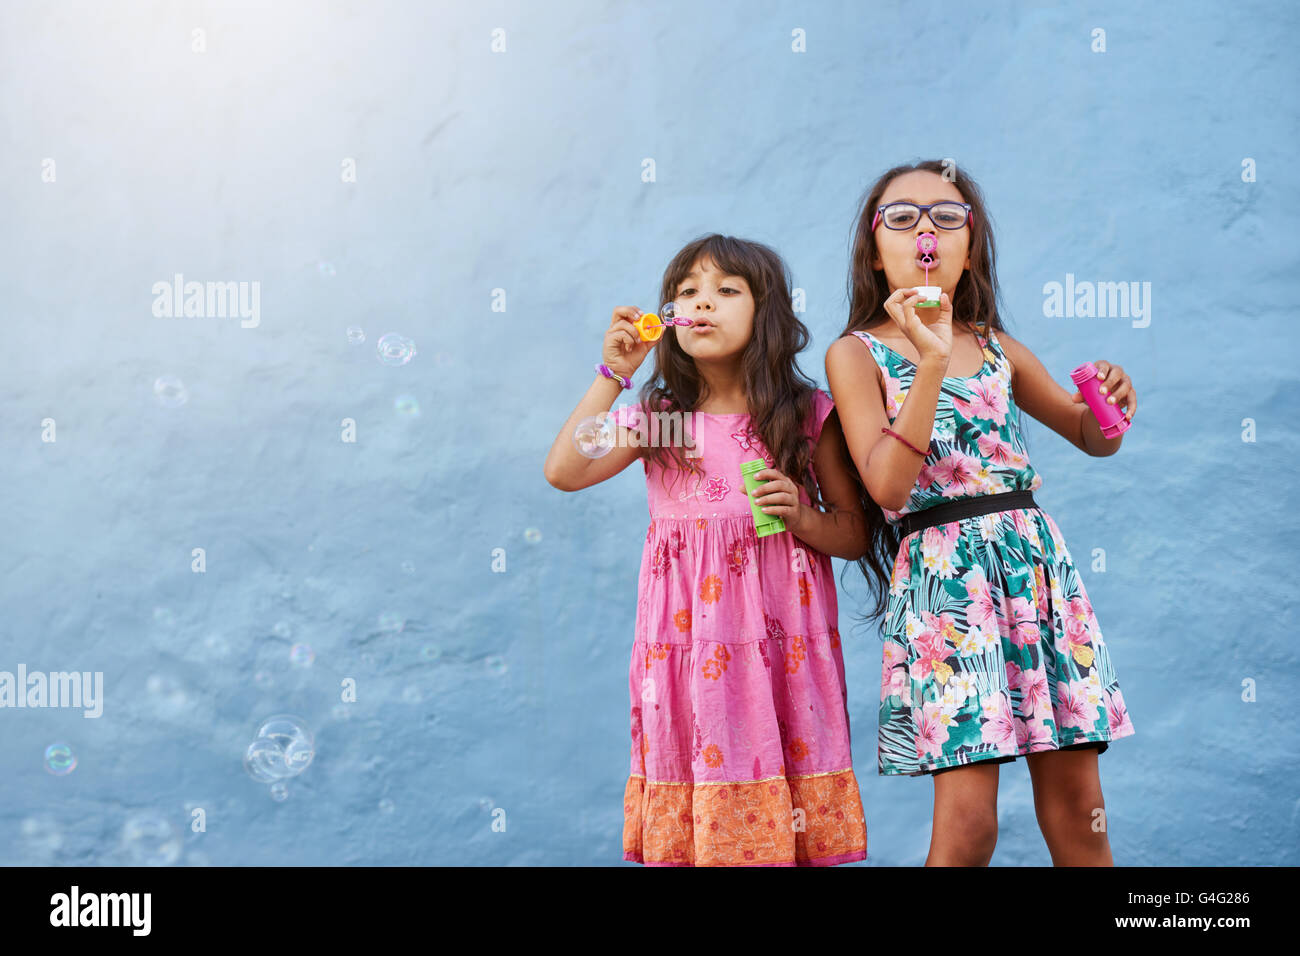 Retrato de adorables niñas soplando burbujas de jabón contra la pared azul. Dos niñas jugando juntos. Foto de stock